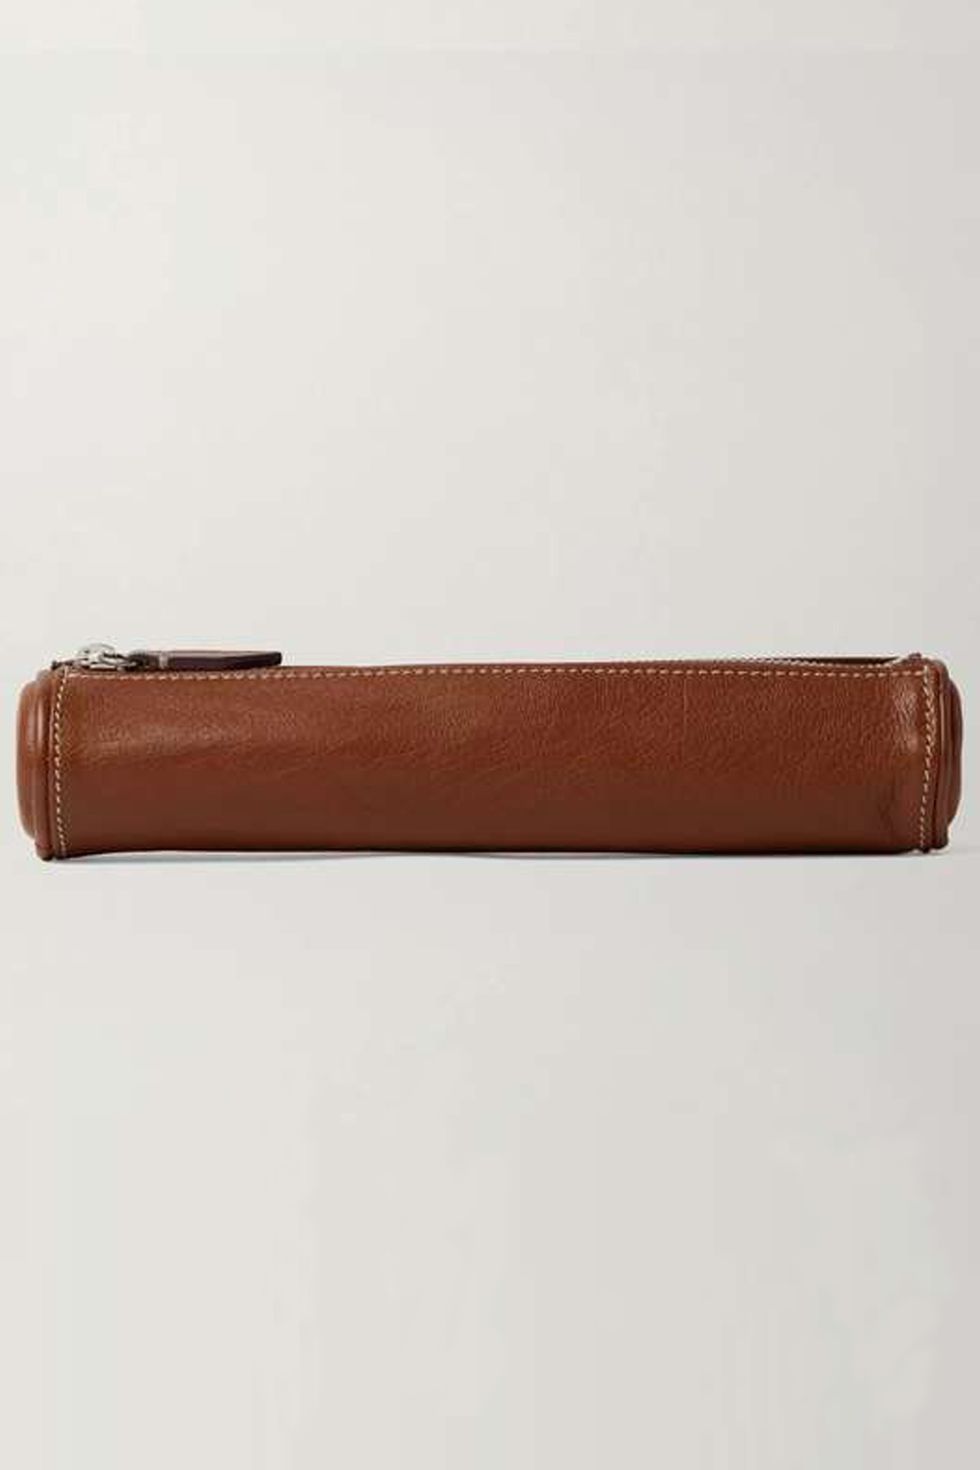 mÉtier, leather pencil case